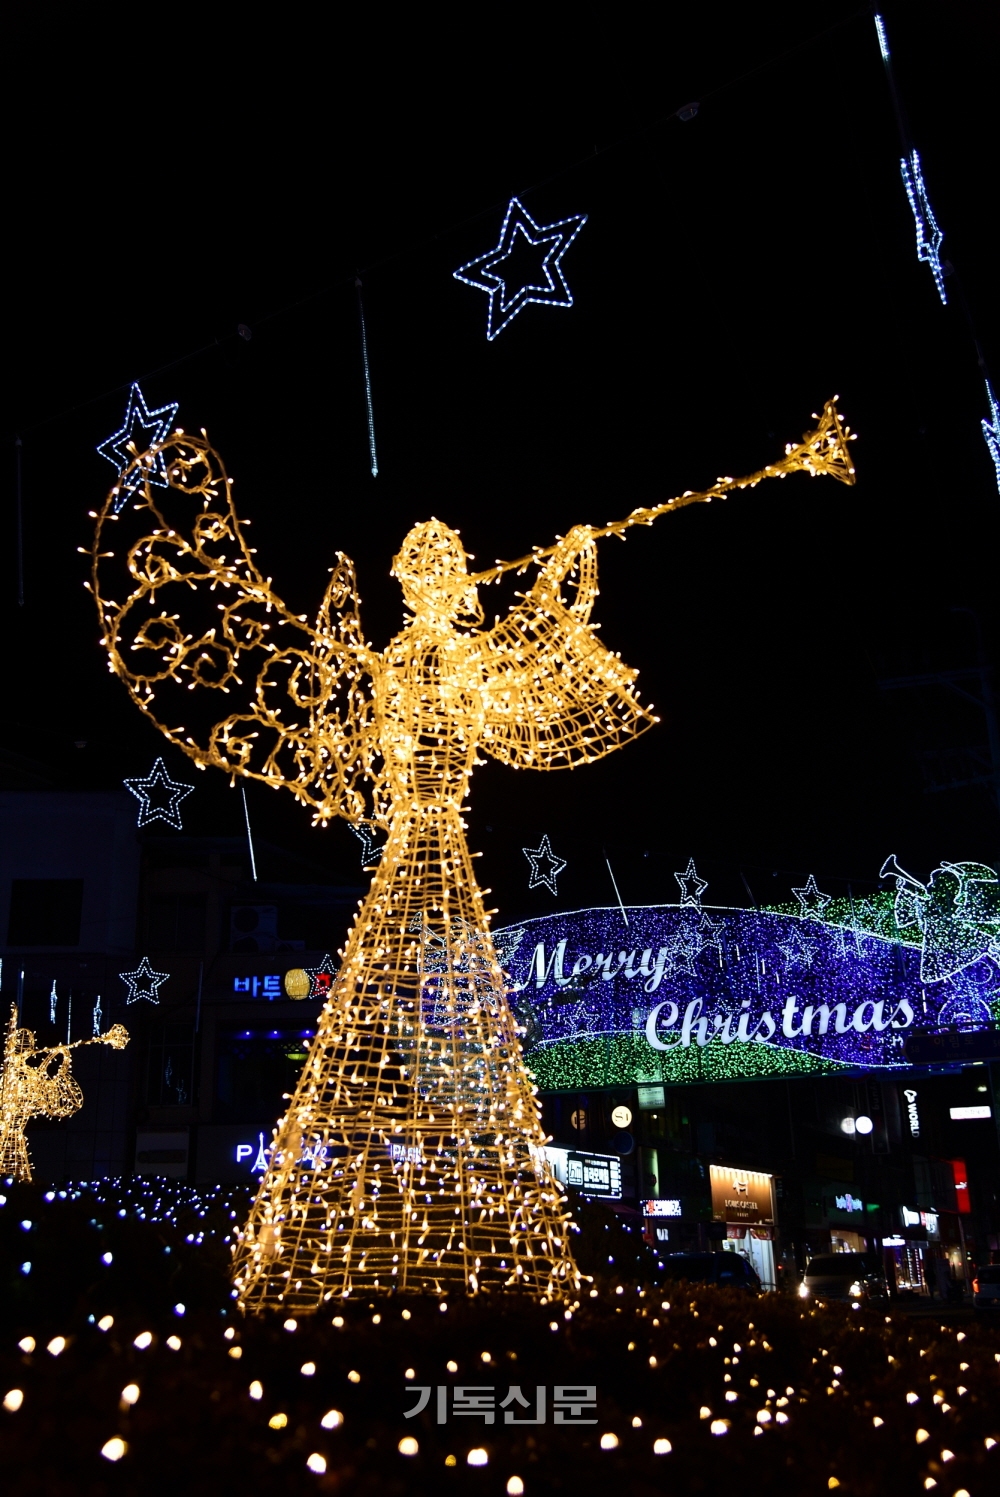 거창크리스마스트리문화축제위원회가 마련한 크리스마스트리. 위원회는 12월 5일부터 제9회 문화축제를 진행한다.